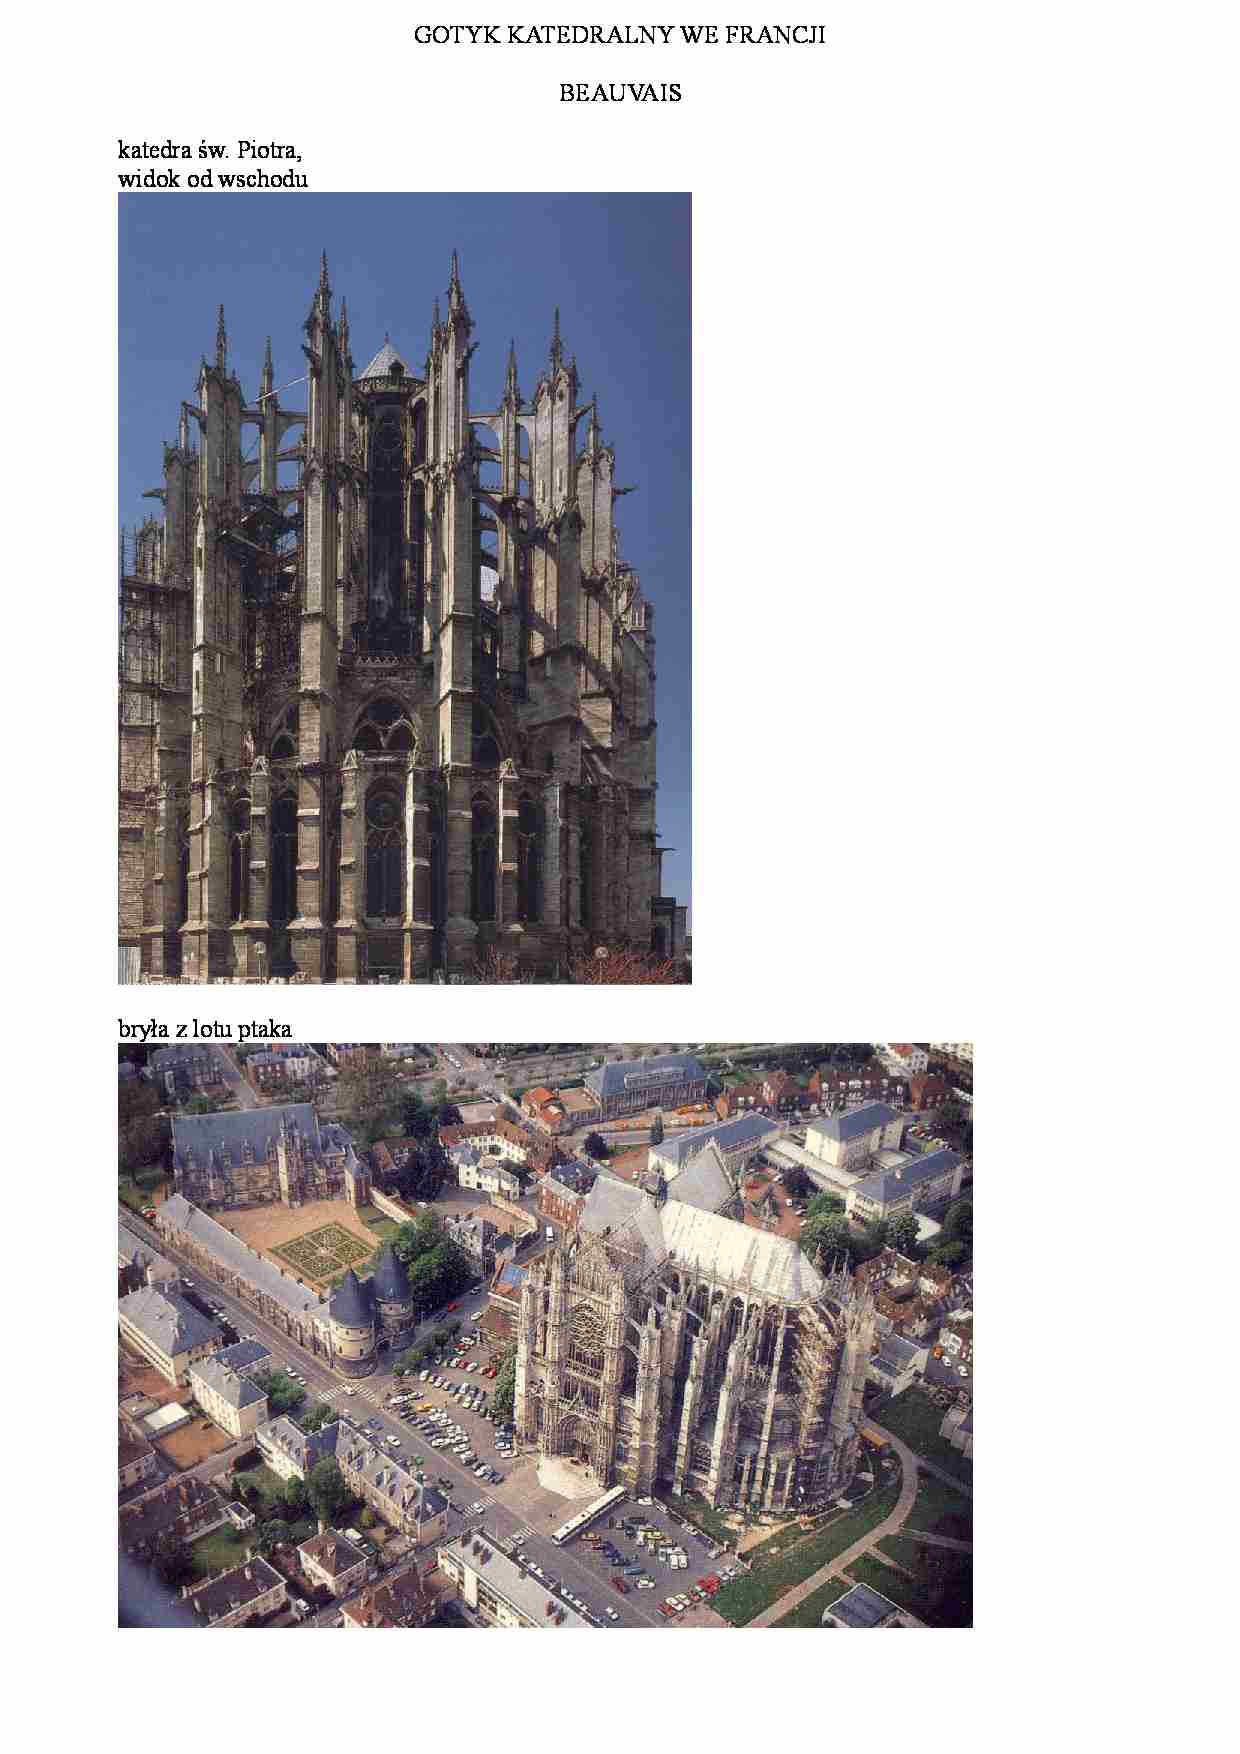 Gotyk katedralny we Francji-Beauvais - strona 1